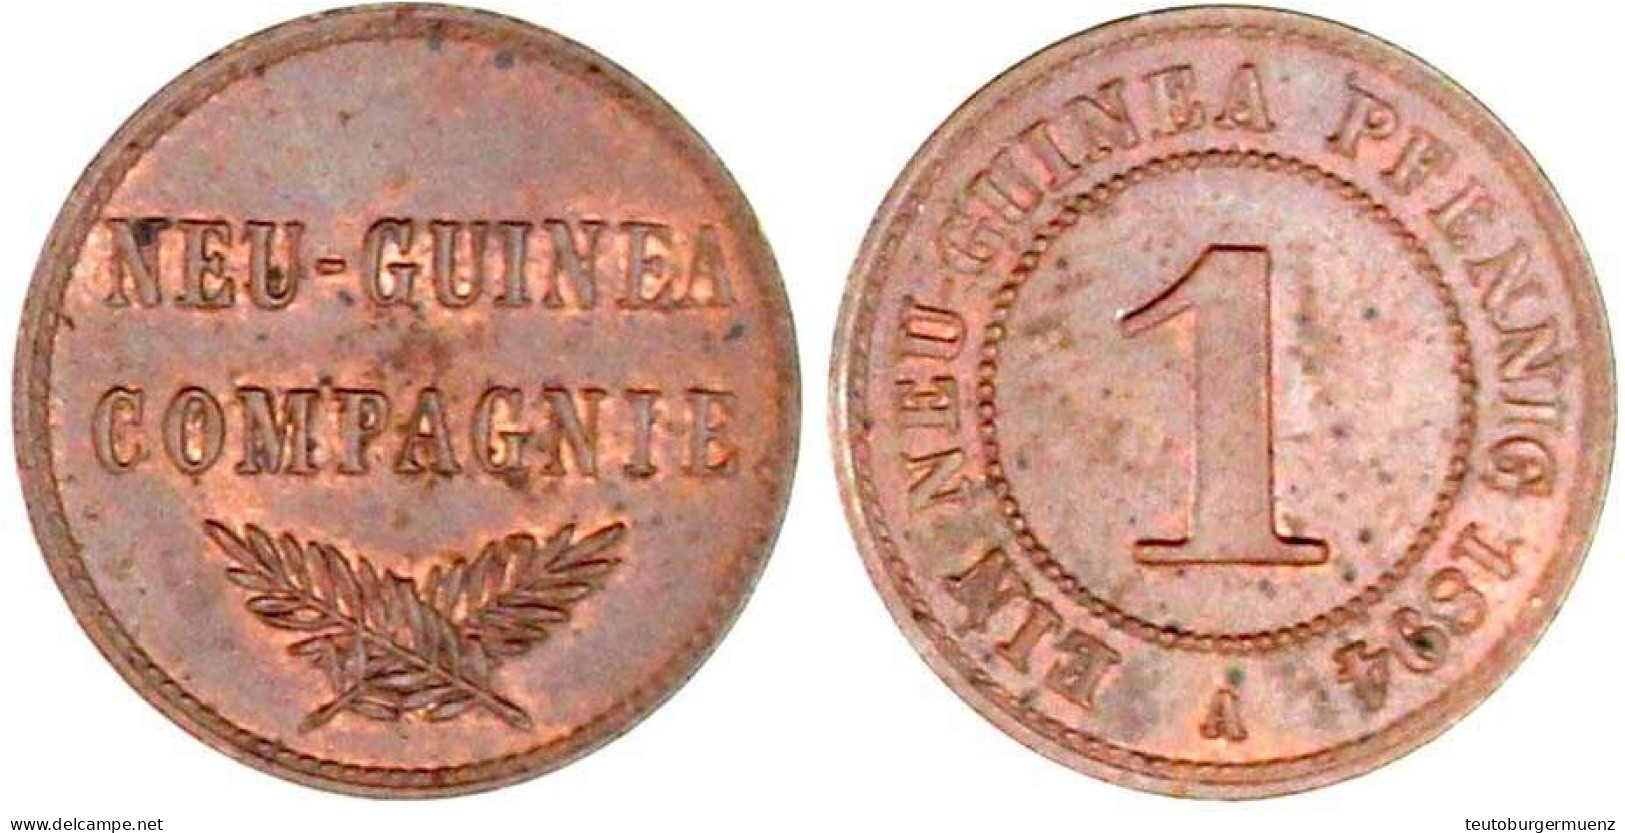 1 Neuguinea Pfennig 1894 A. Vorzüglich/Stempelglanz. Jaeger 701. - German New Guinea